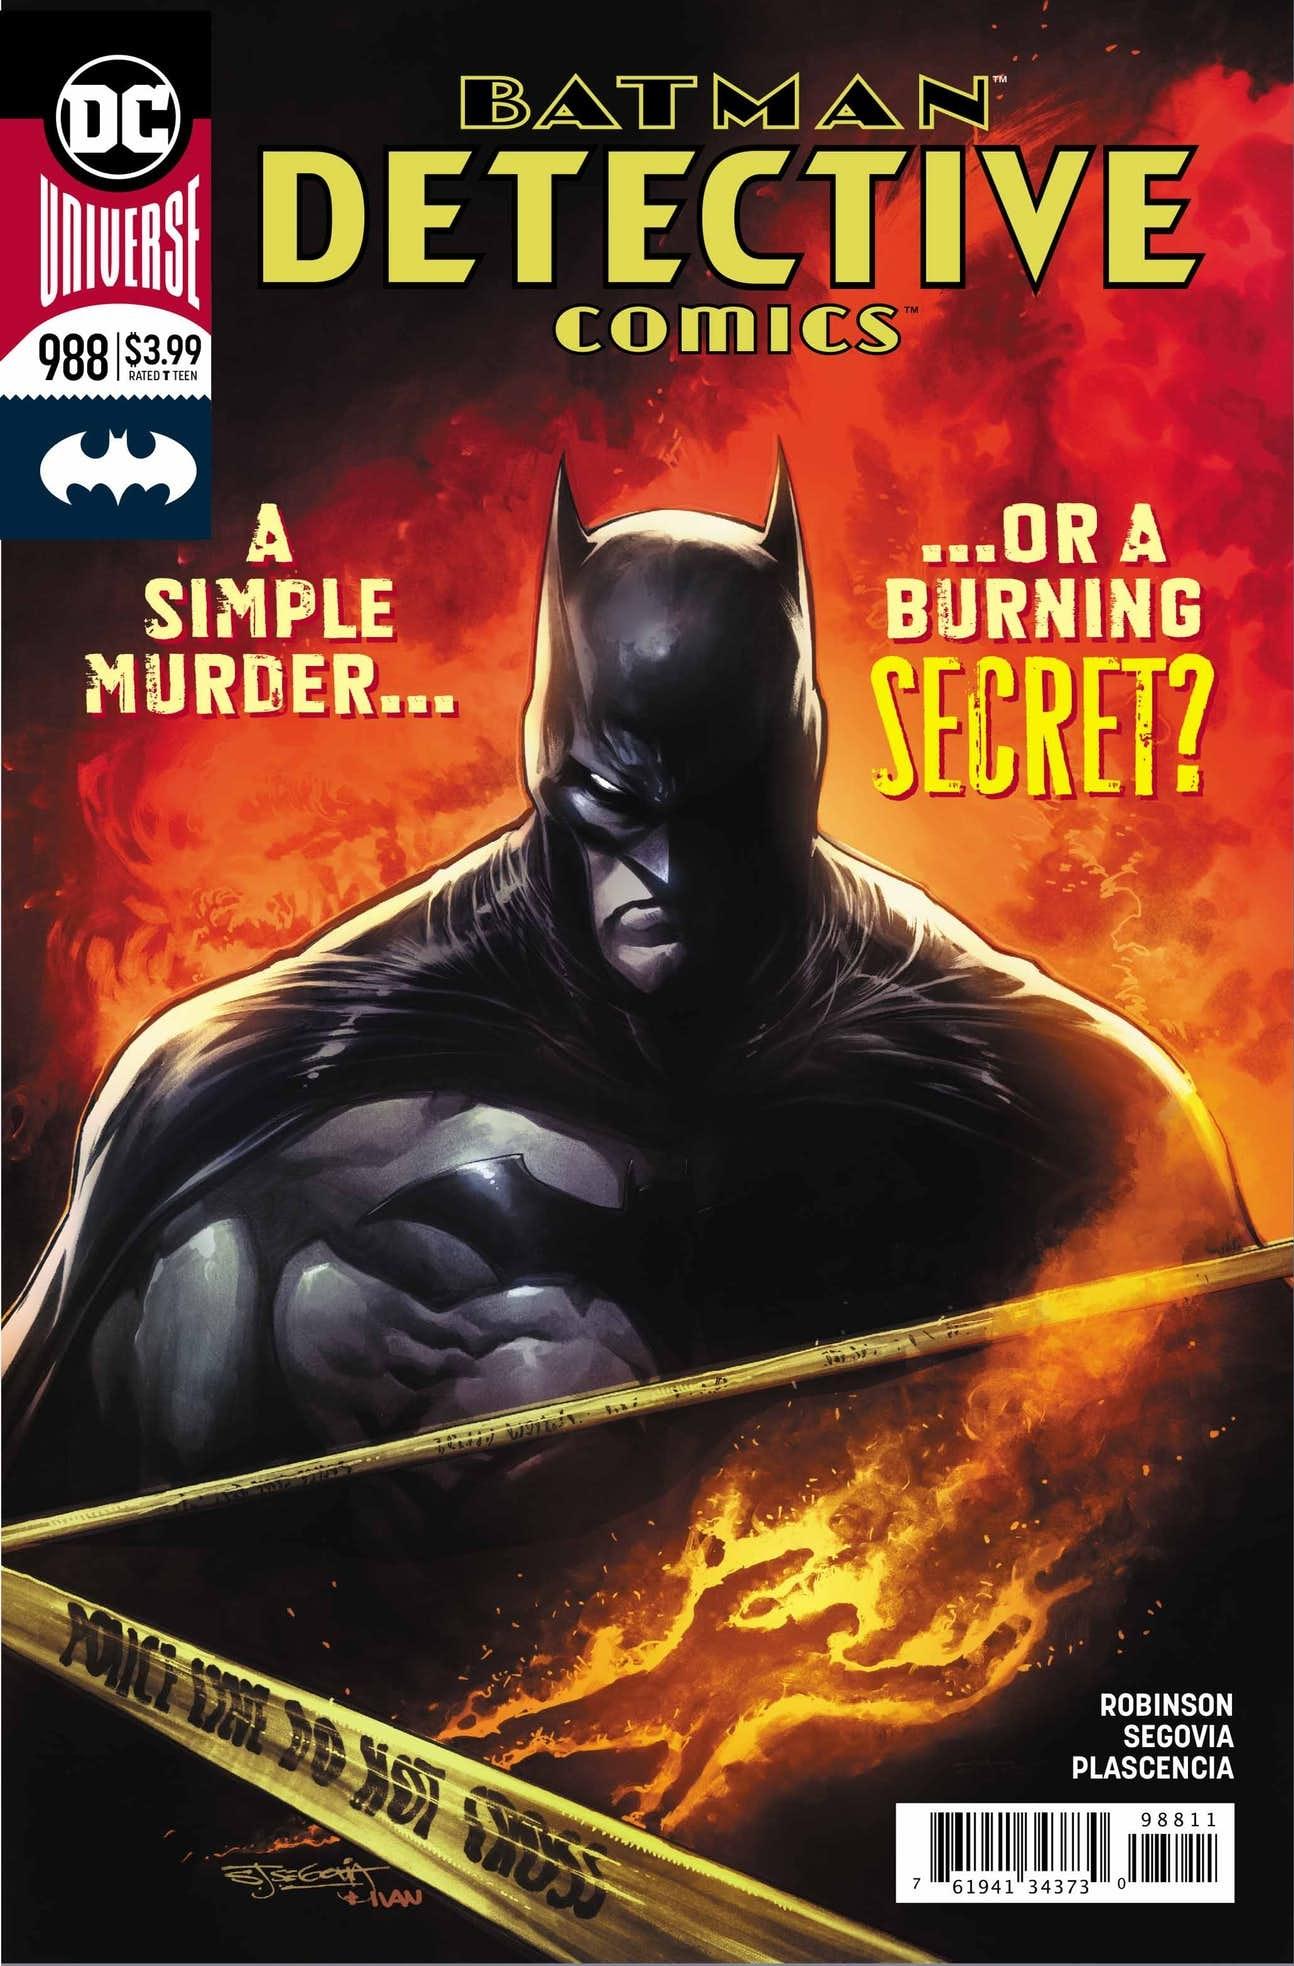 Detective Comics Vol. 1 #988